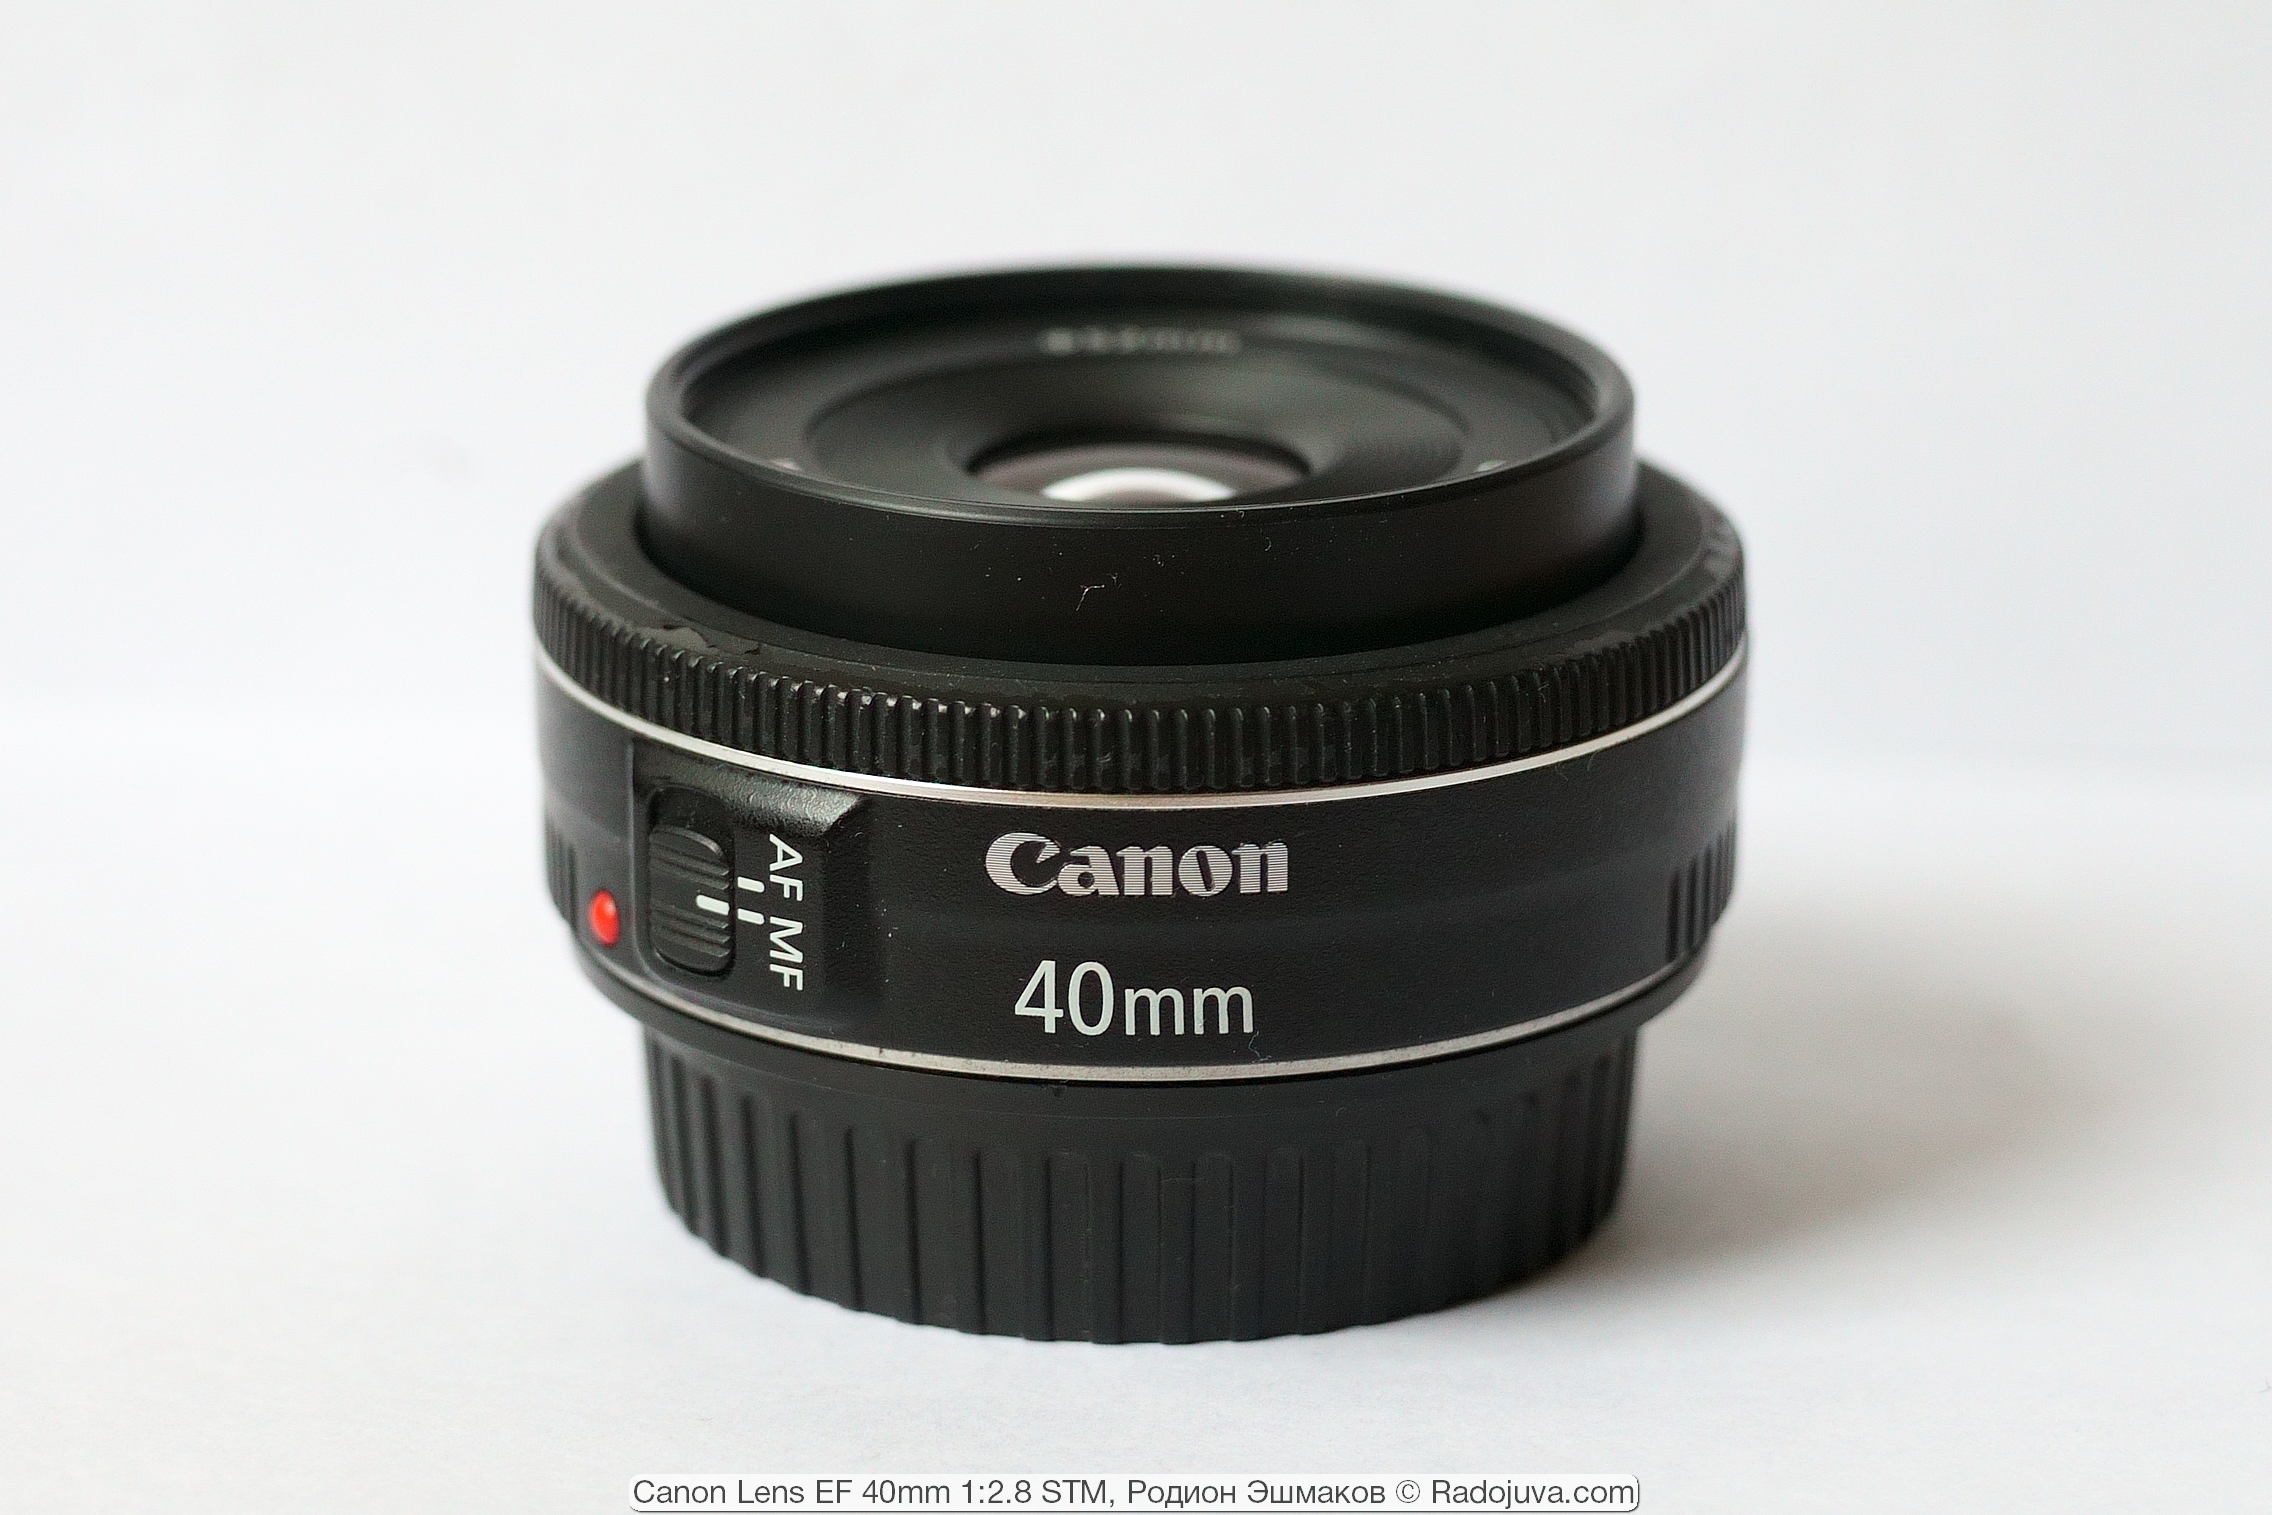 Pancake Canon Lens EF 40mm 1: 2.8 STM. Anniversary hundredth 